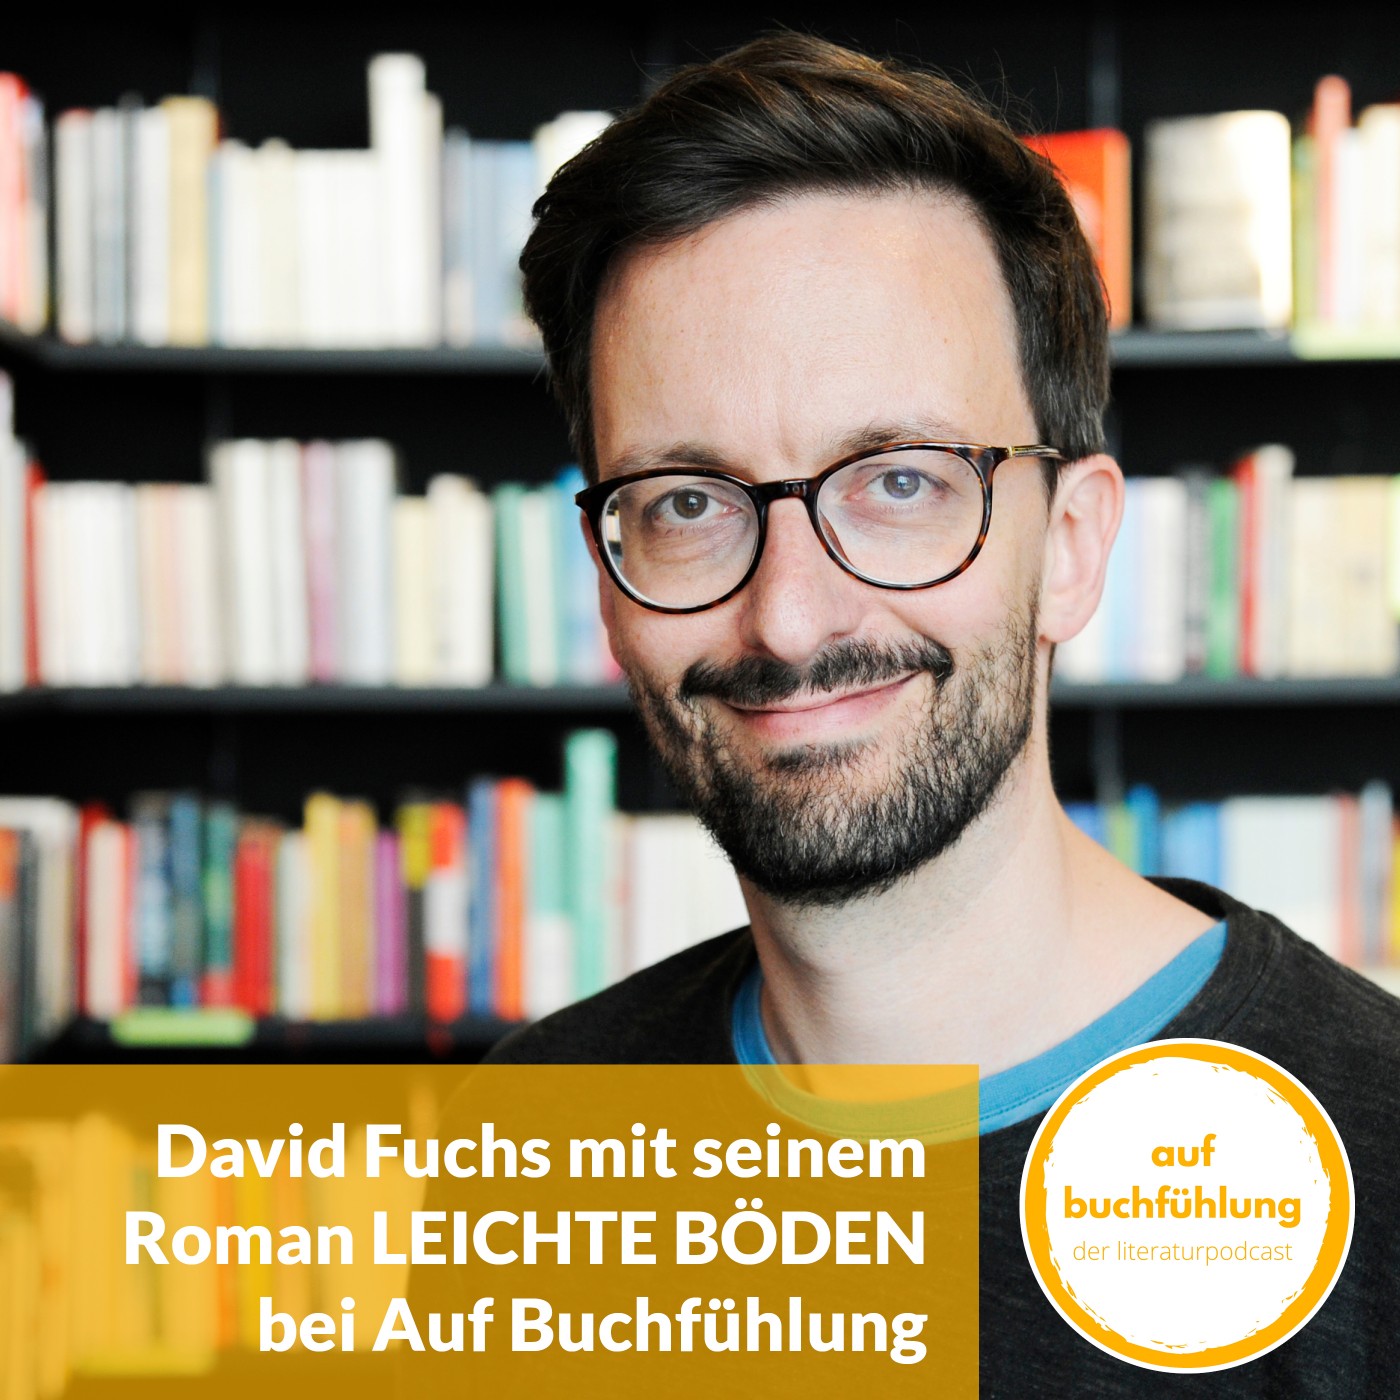 David Fuchs zu Gast bei Auf Buchfühlung